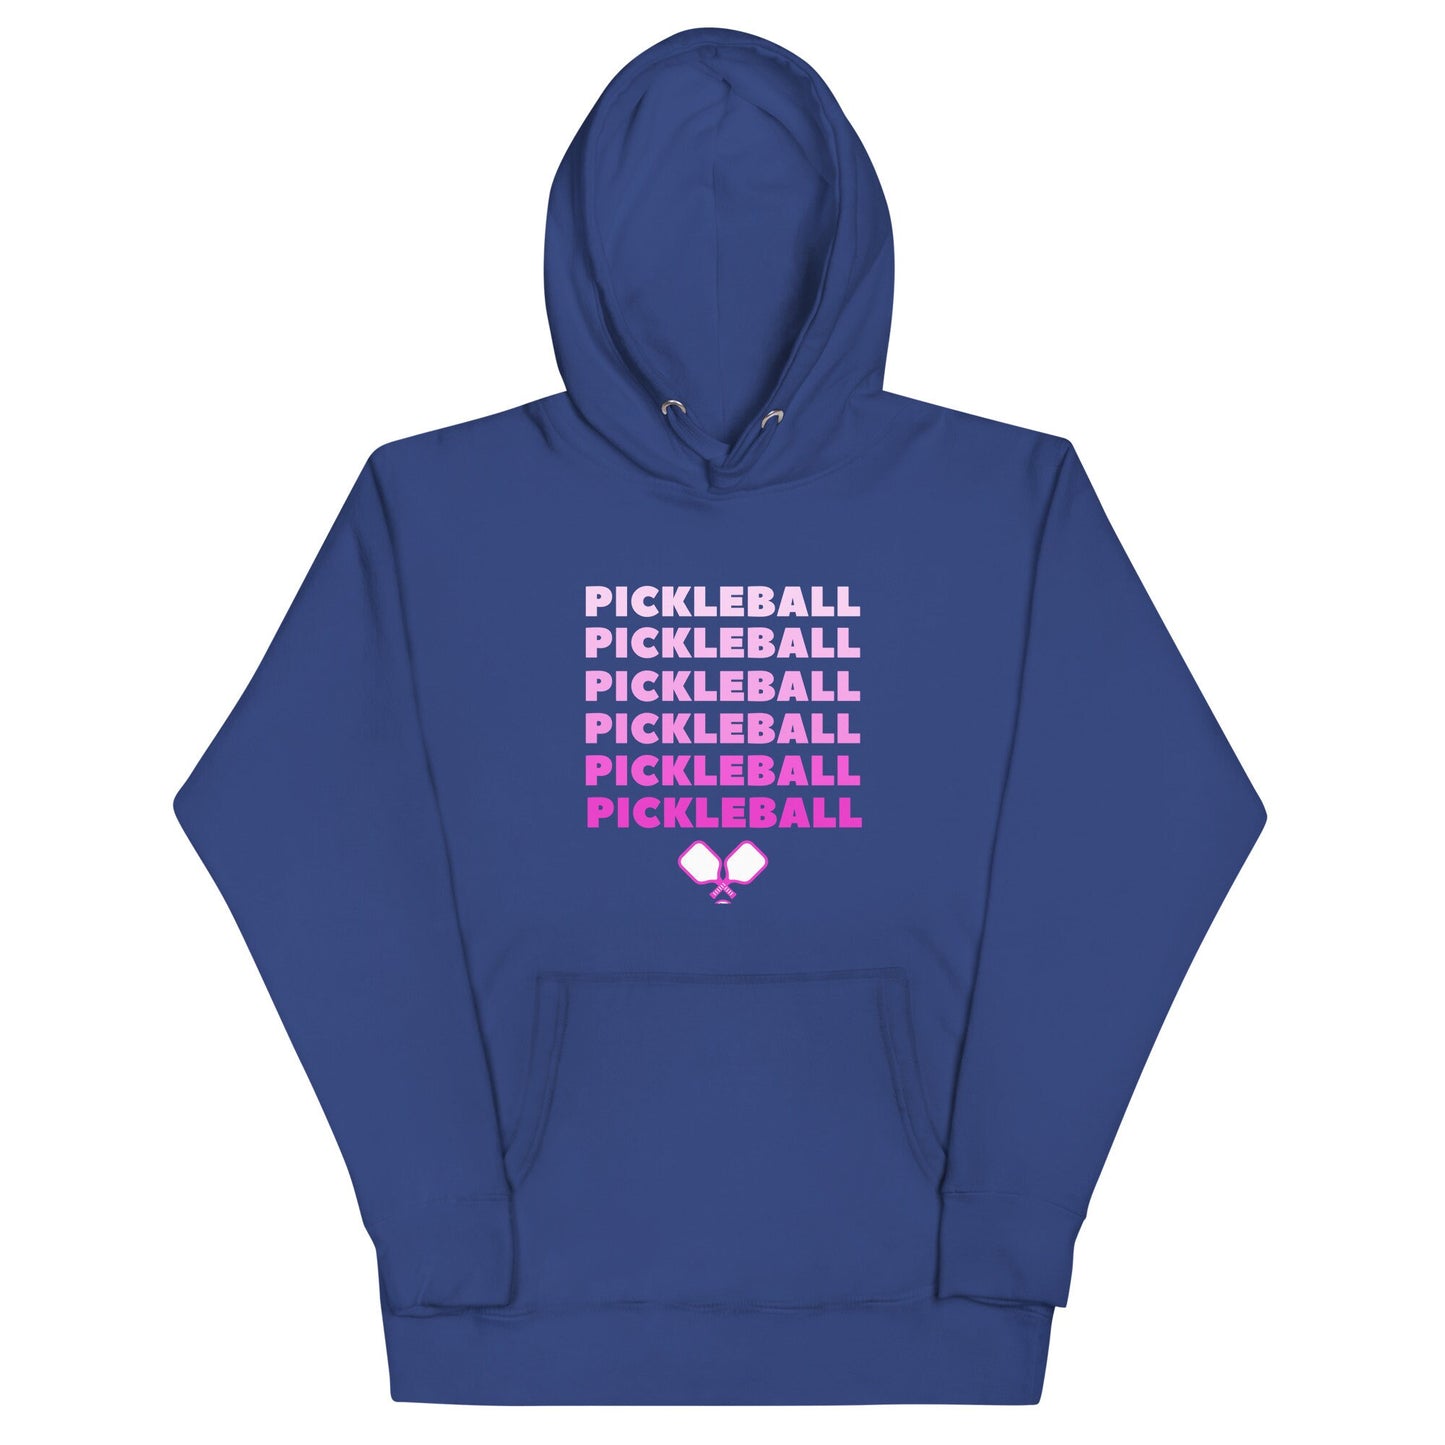 Pickleball Hoodie, Pickleball Apparel, Pickleball Gifts, Pickleball Player, Cute Pickleball Sweatshirt, Pickleball For Her